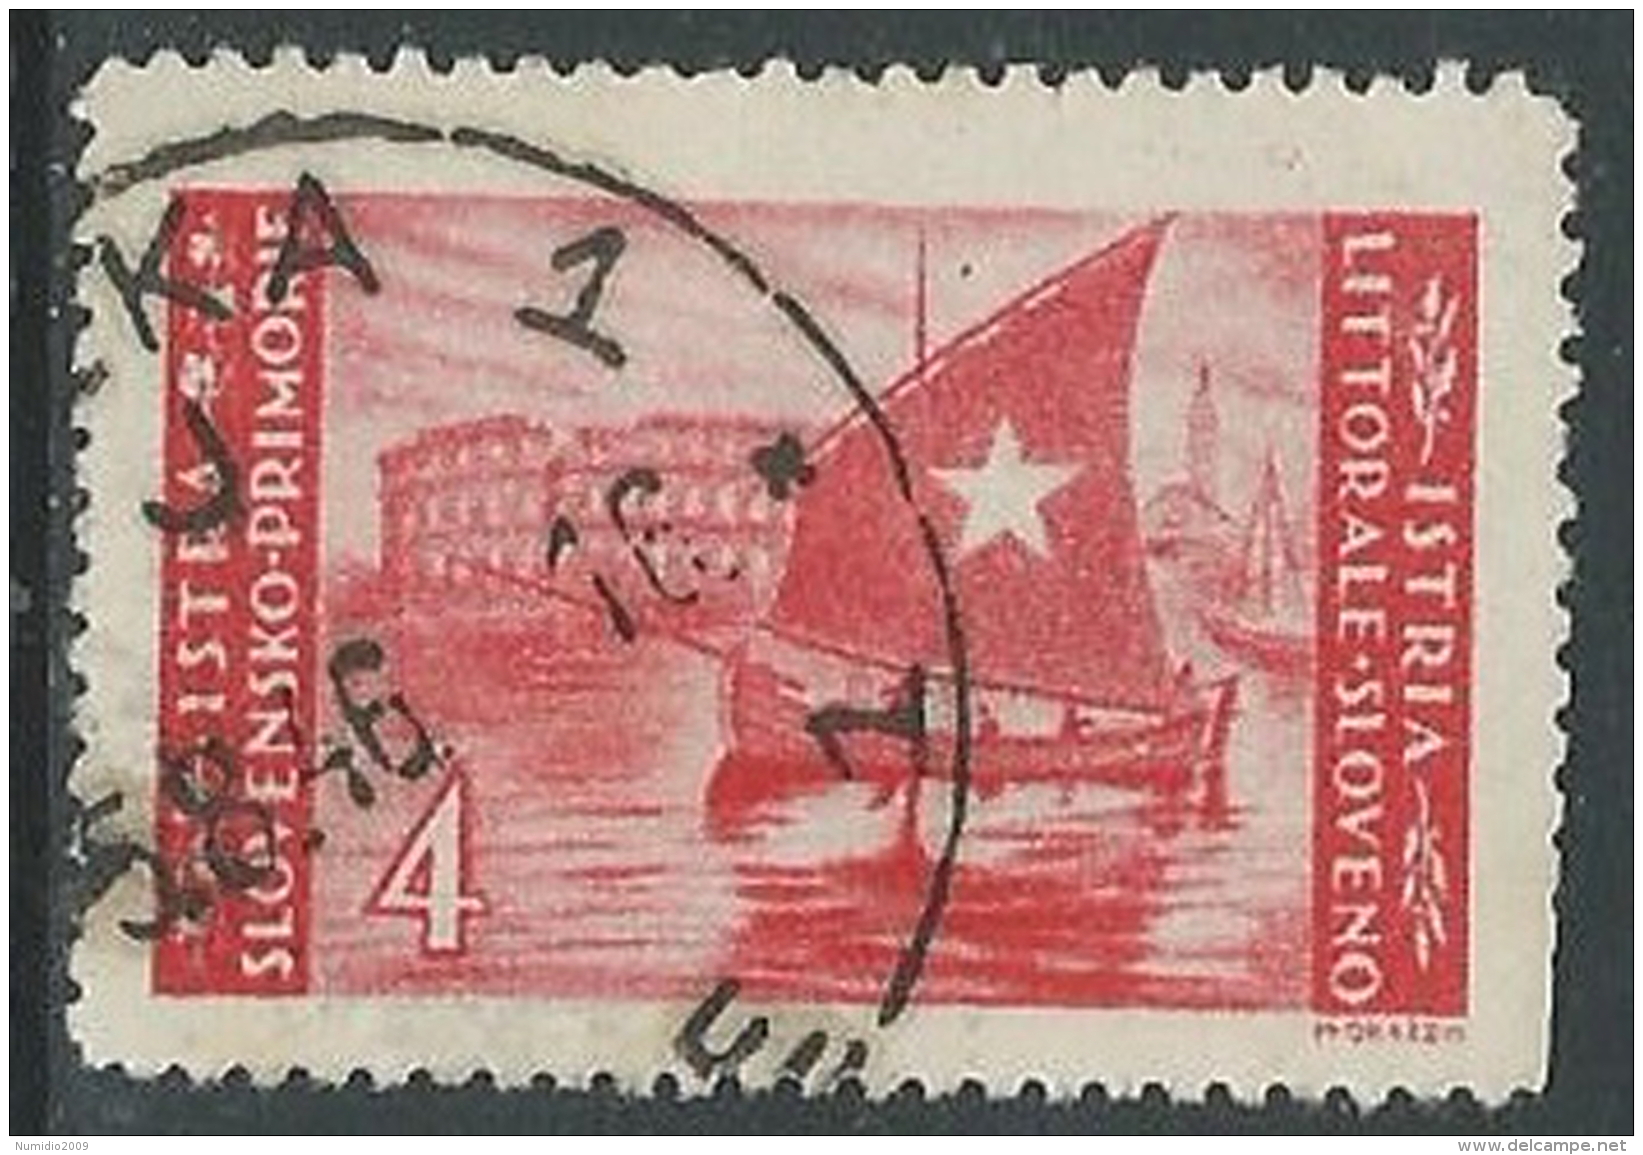 1946 OCC JUGOSLAVA ISTRIA USATO EMISSIONE BILINGUE 4 LIRE - M56-7-6 - Occ. Yougoslave: Istria